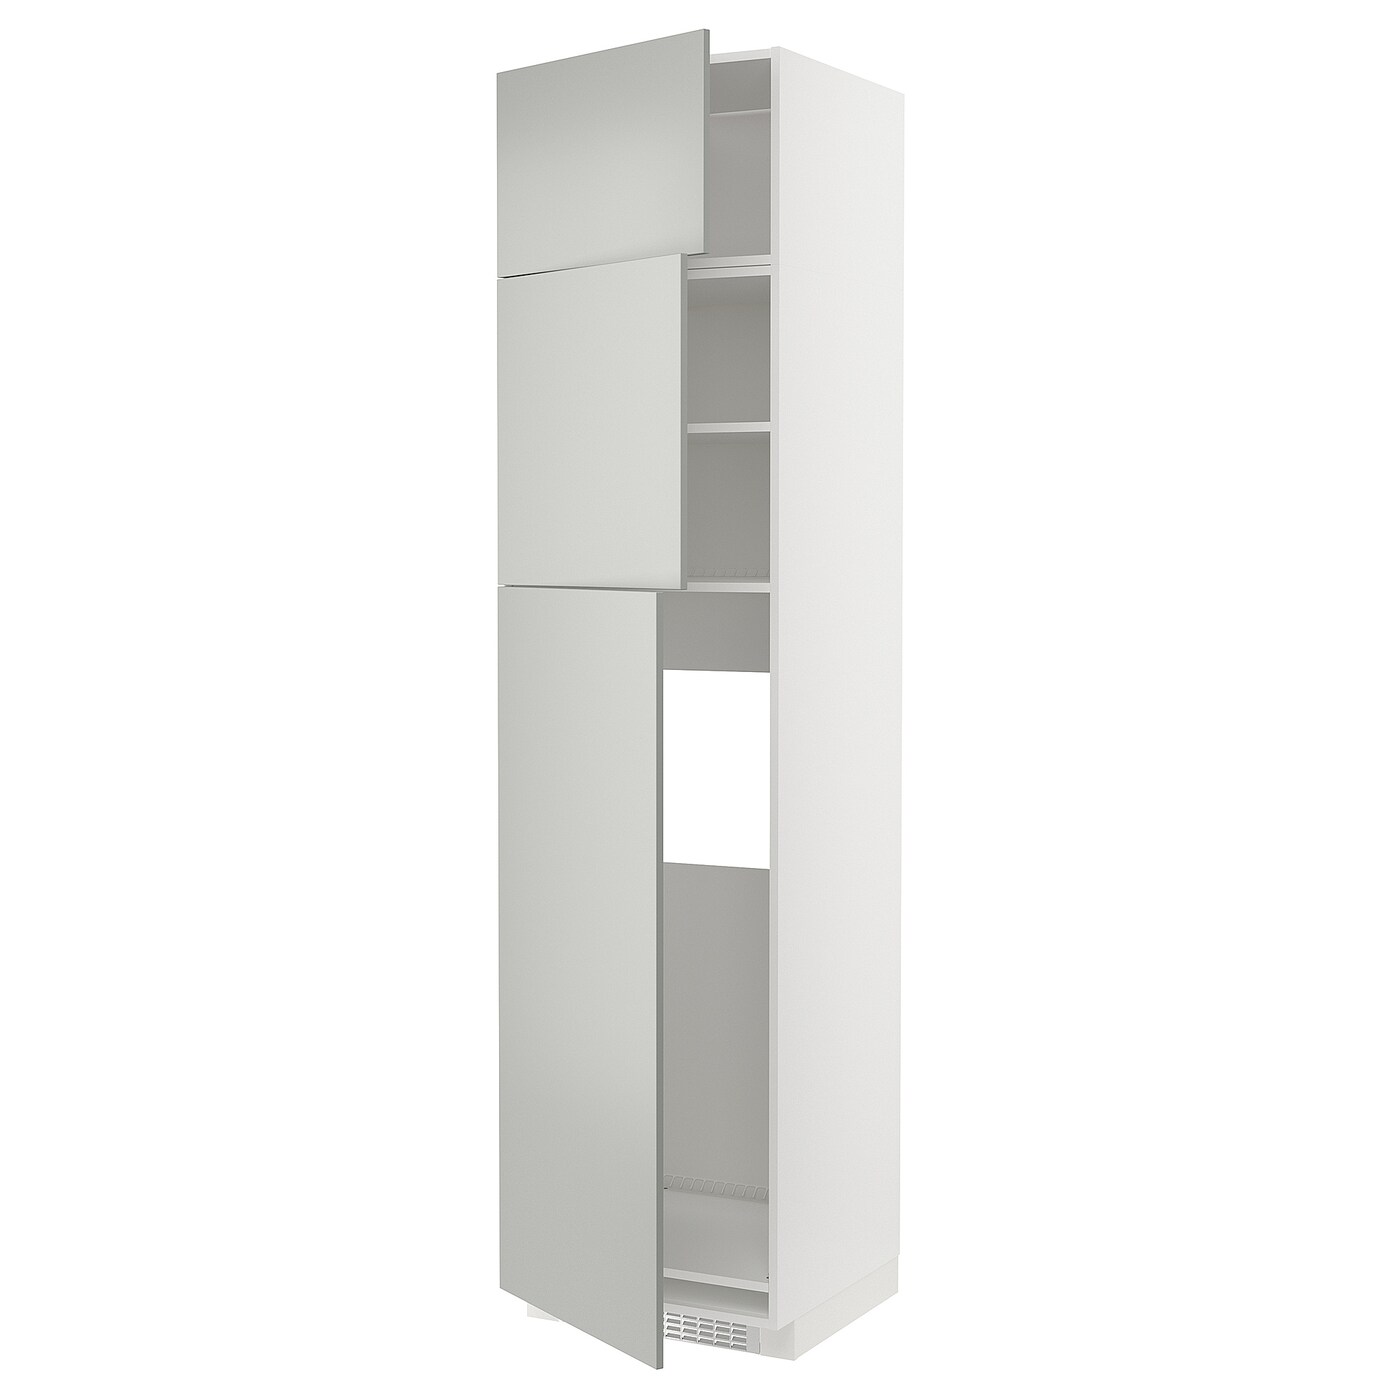 Шкаф - METOD IKEA/ МЕТОД ИКЕА,  248х60 см, белый/серый